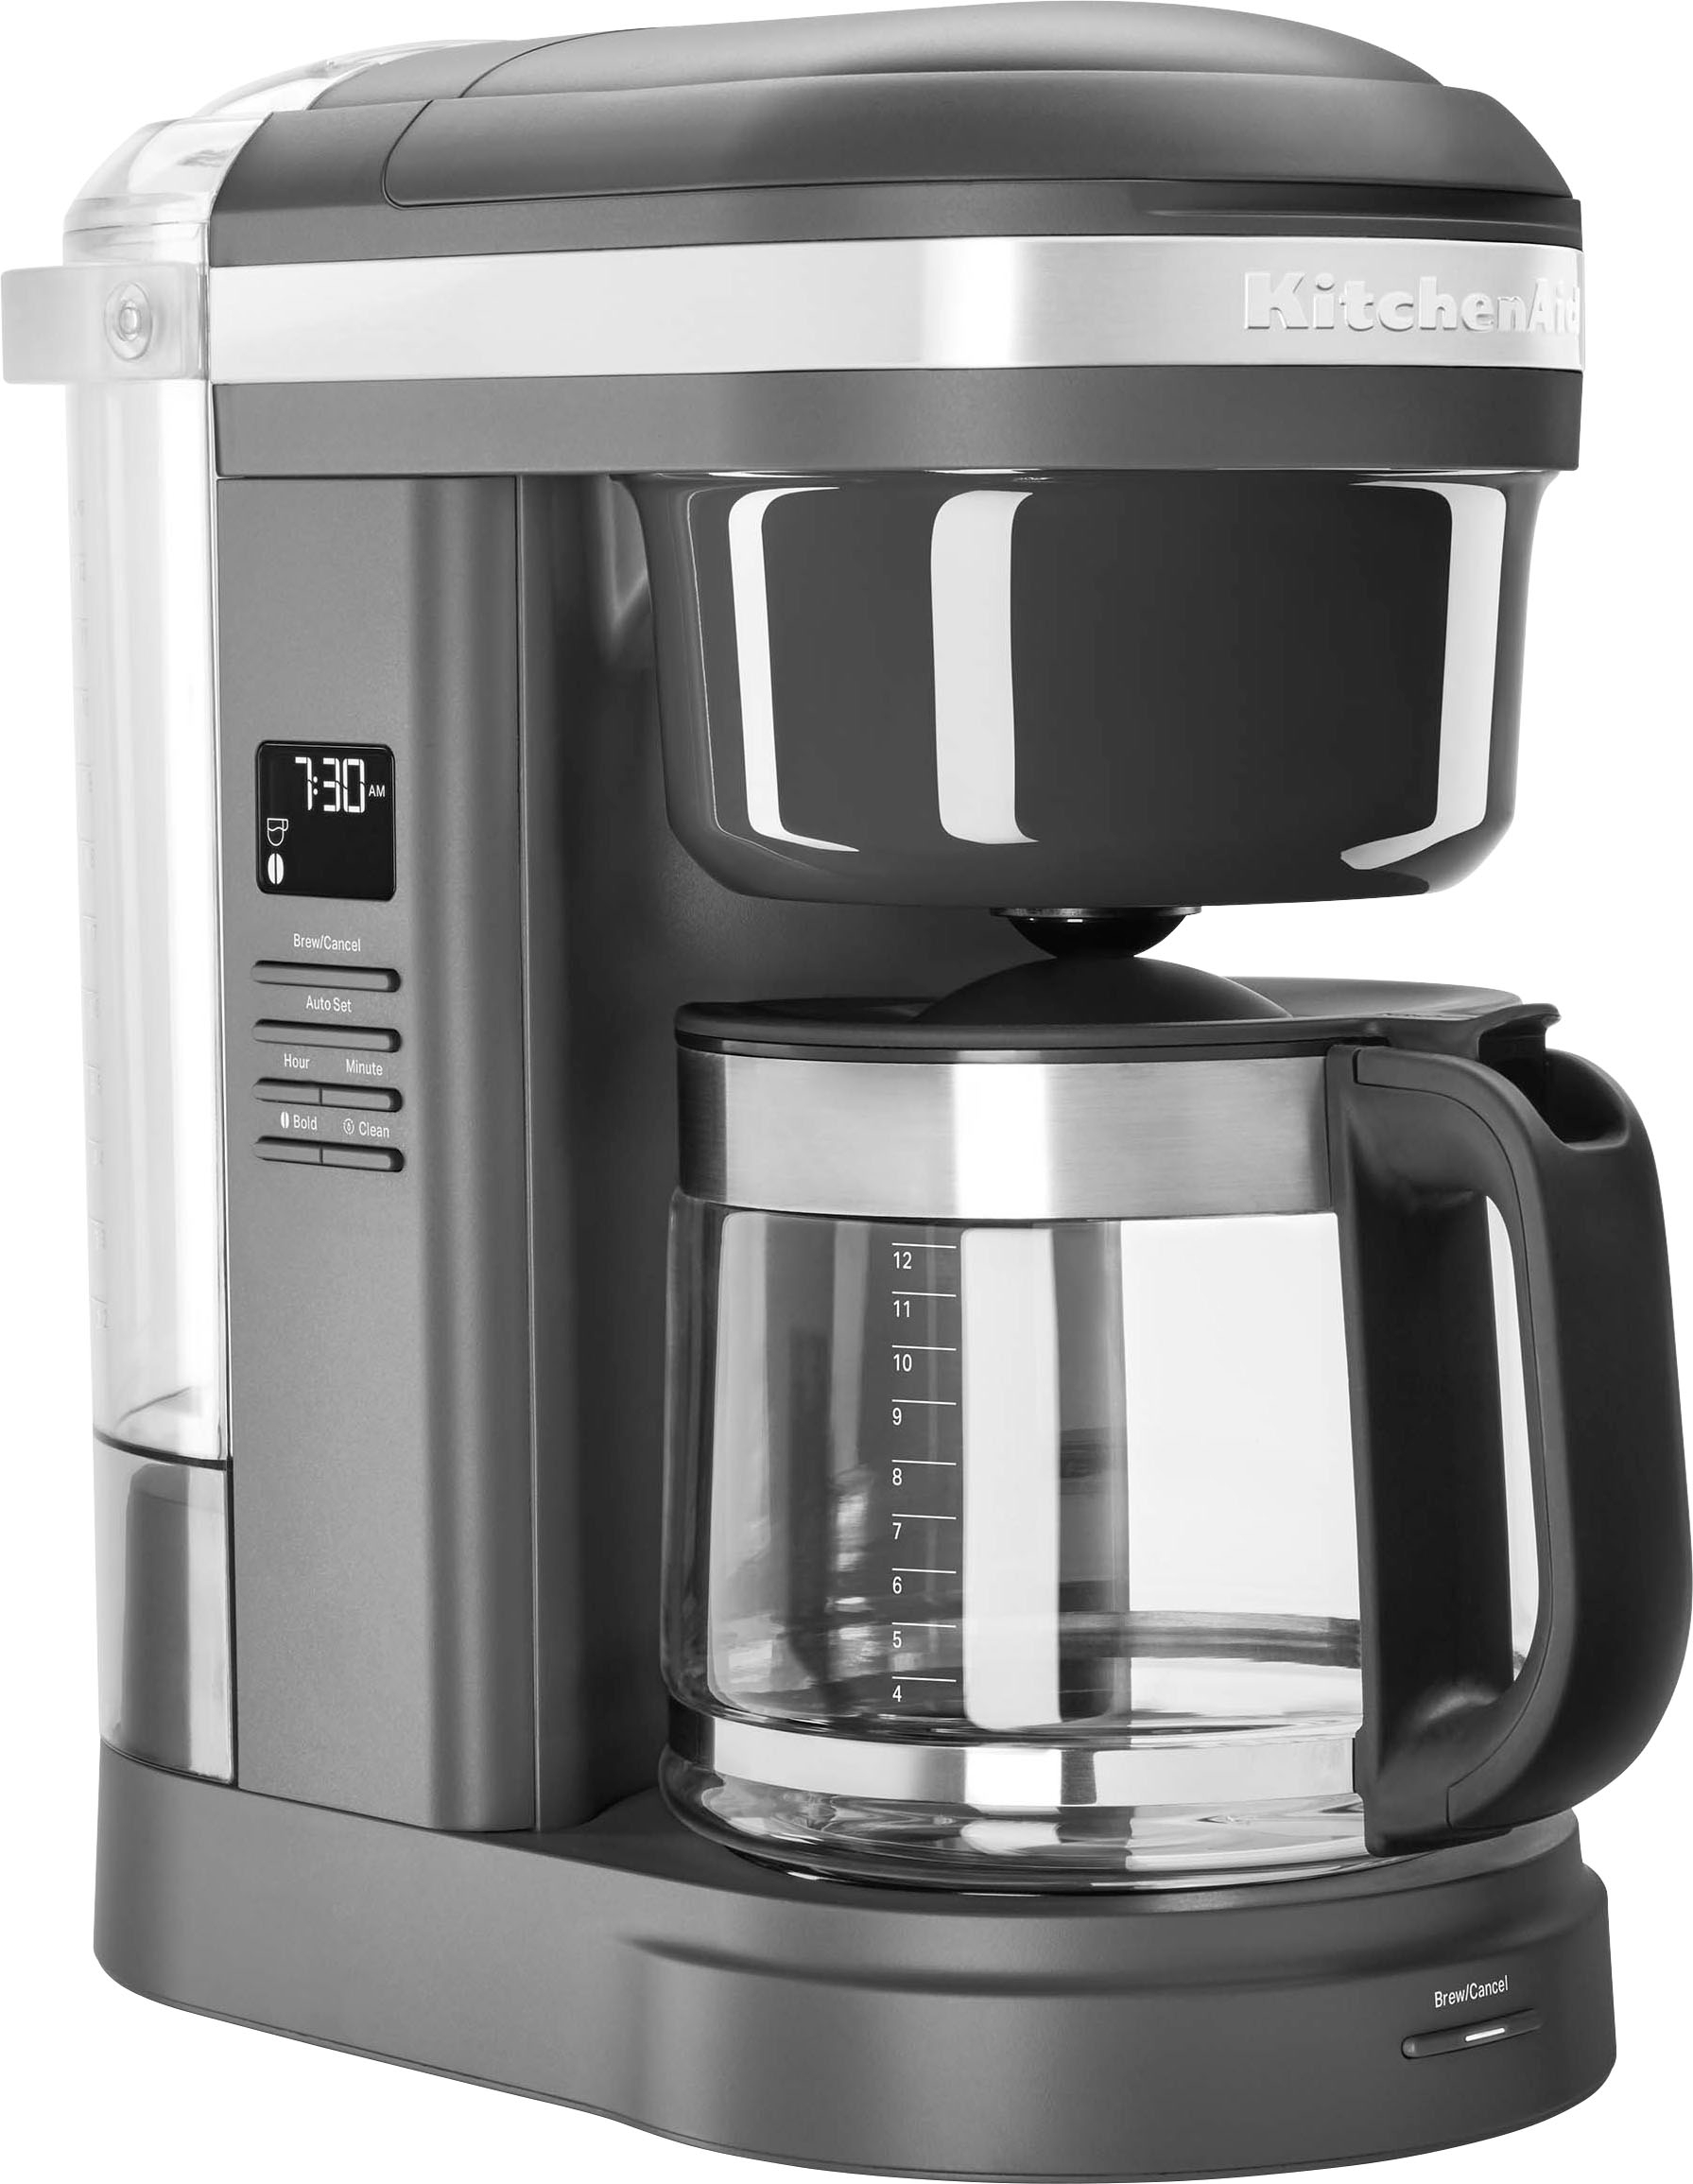 KitchenAid Onyx Black 12-Cup Drip Coffee Maker Machine + Reviews